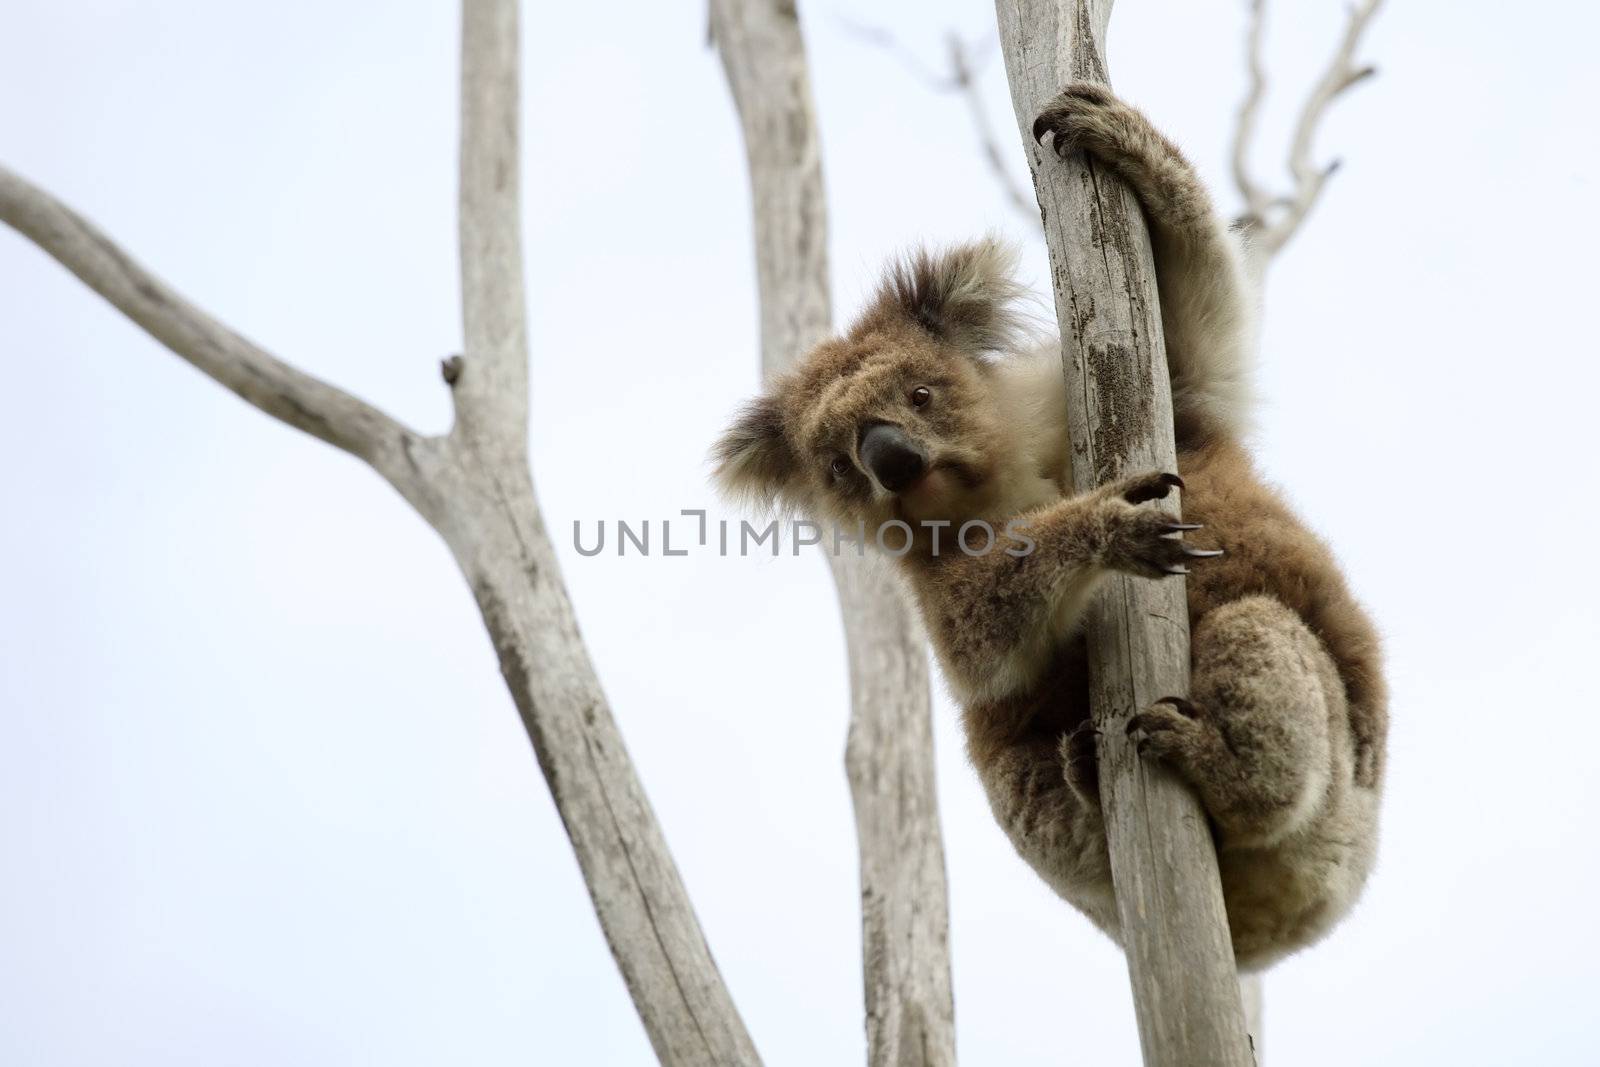 Wild Koala up a tree by sumners